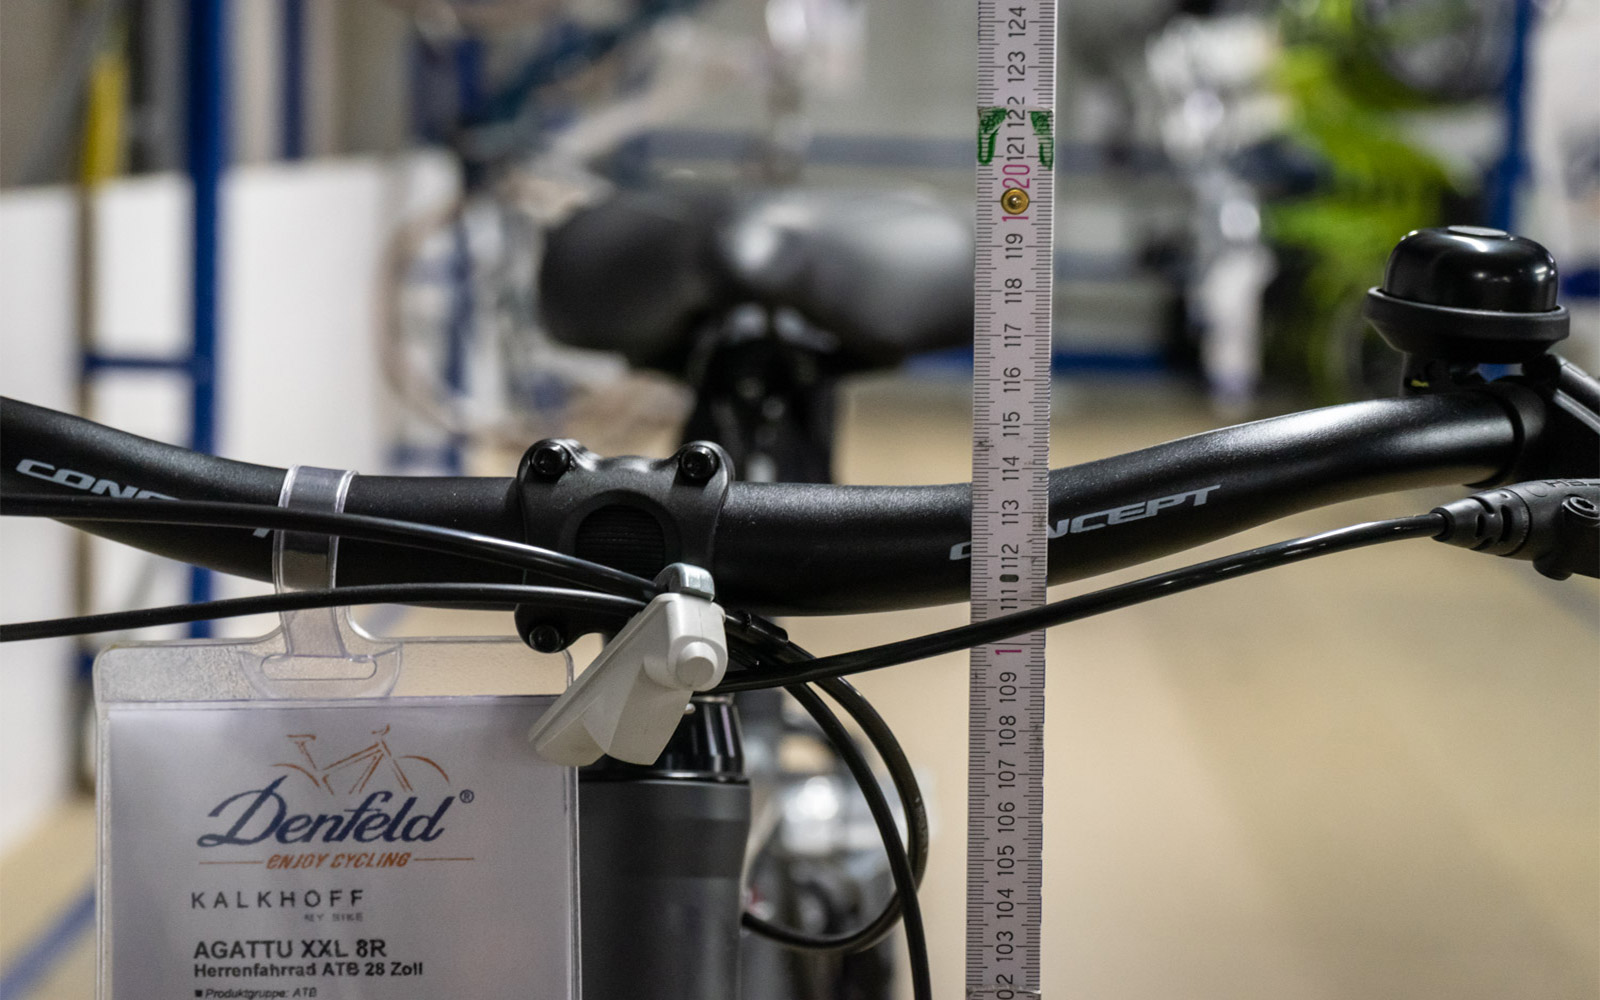 Lenkerhöhe an einem Fahrrad für große und schwere Menschen, hier ein Kalkhoff Agattu XXL 28 Zoll mit 70cm Rahmen